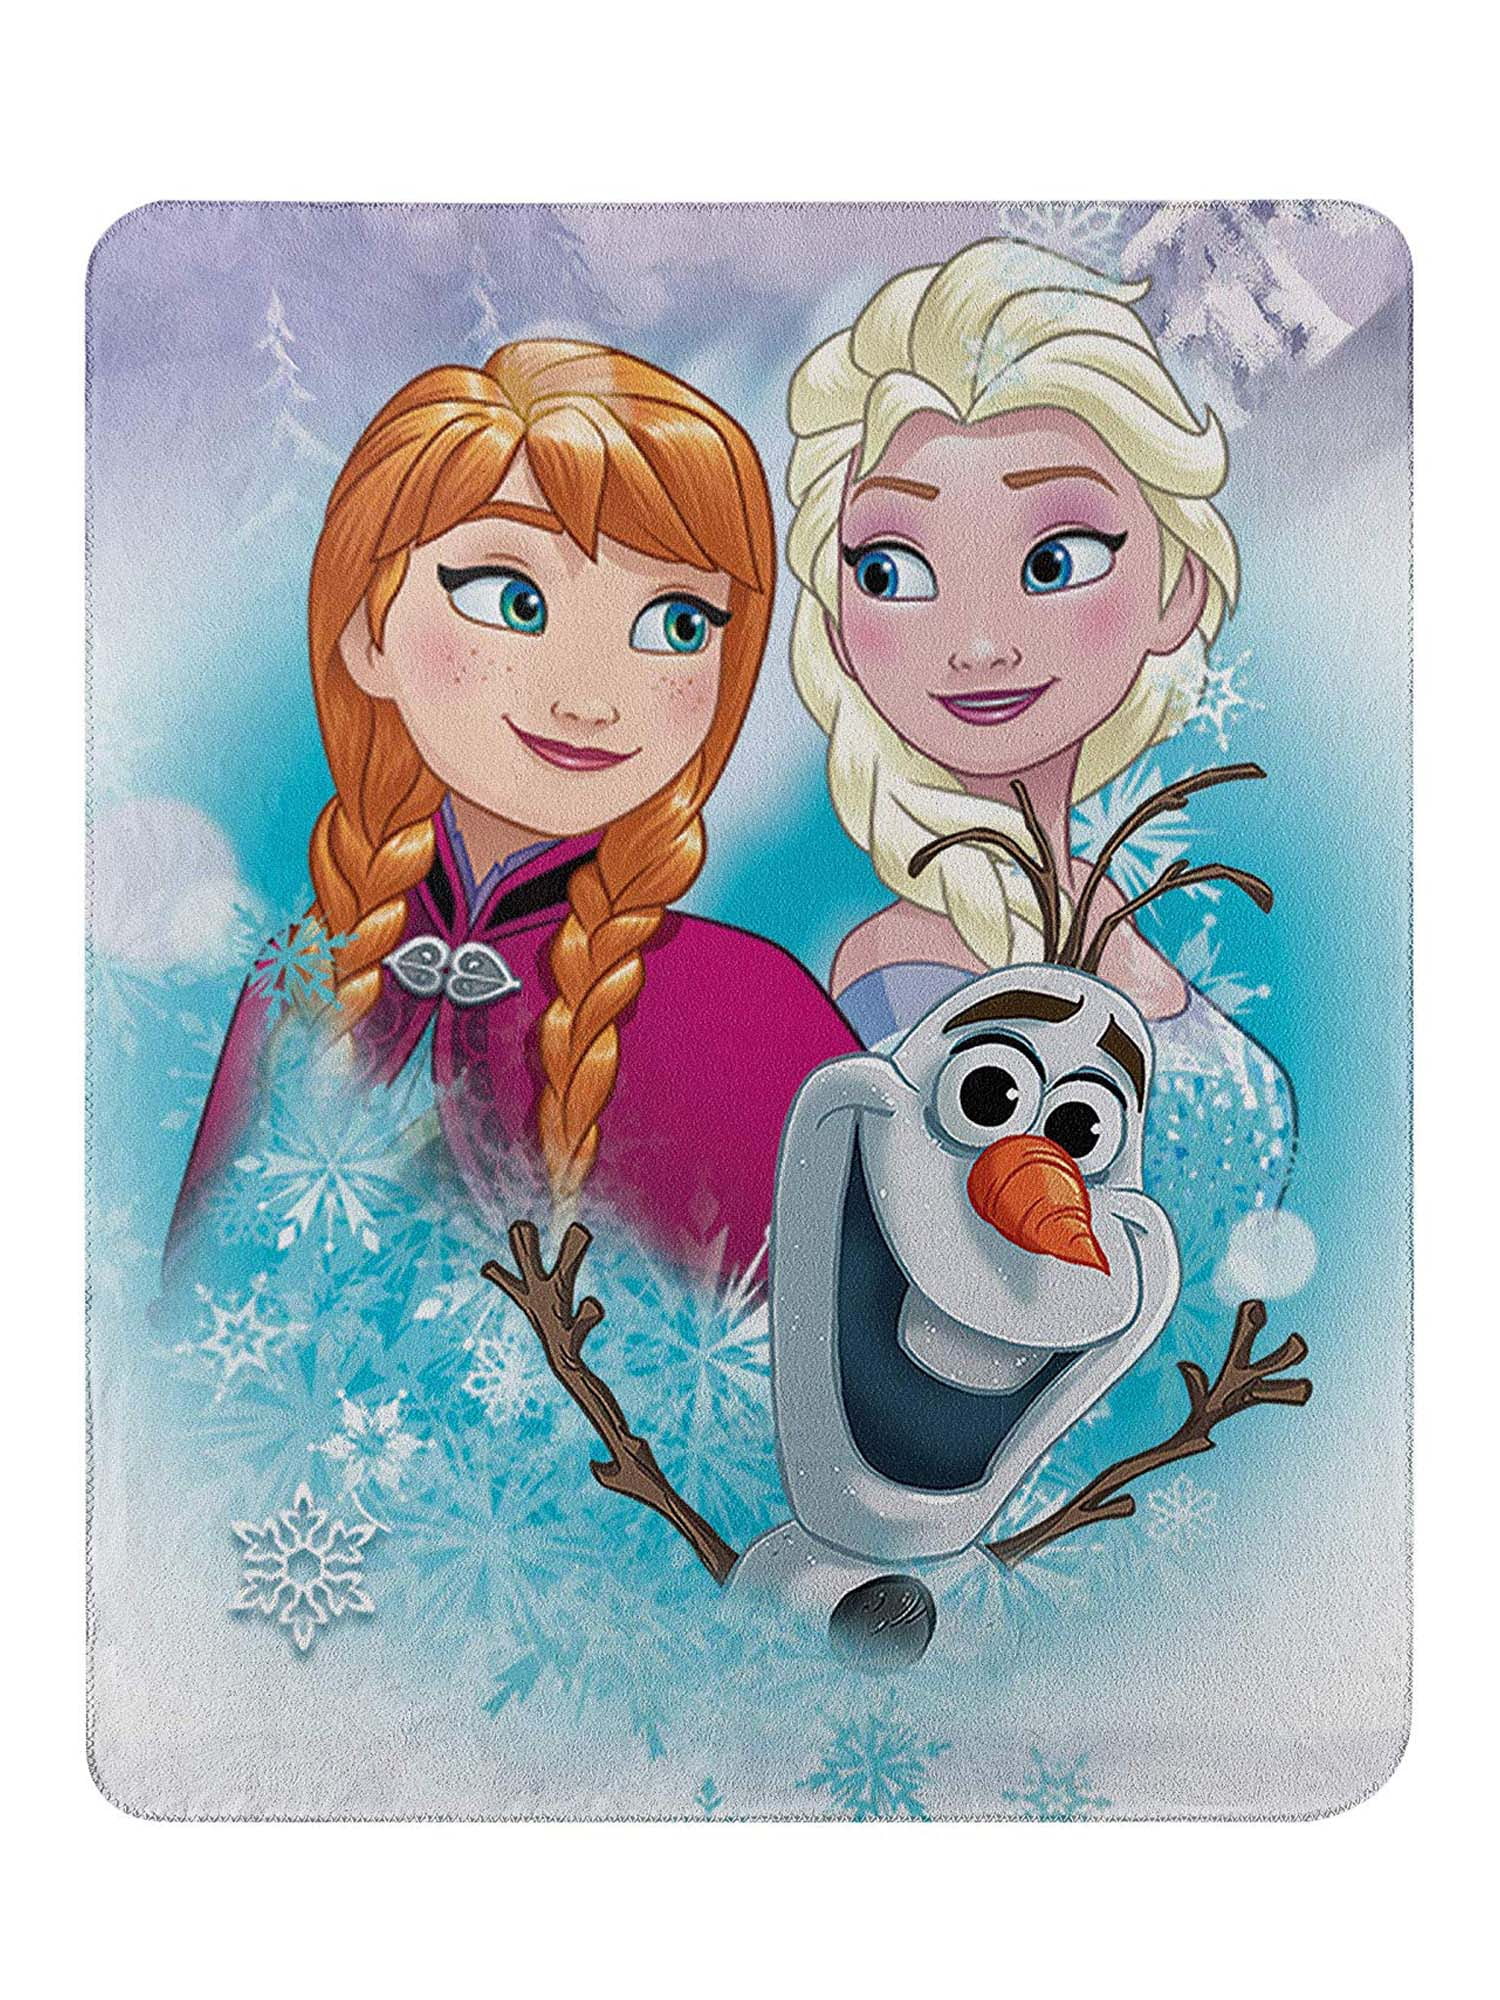 2 Motive Wendekissen Vorder- und Rückseite Bedruckt mit Anna mit Olaf und ELSA 40x40 cm 1 Kissen Disney Frozen 2 Öko Tex Standard 100